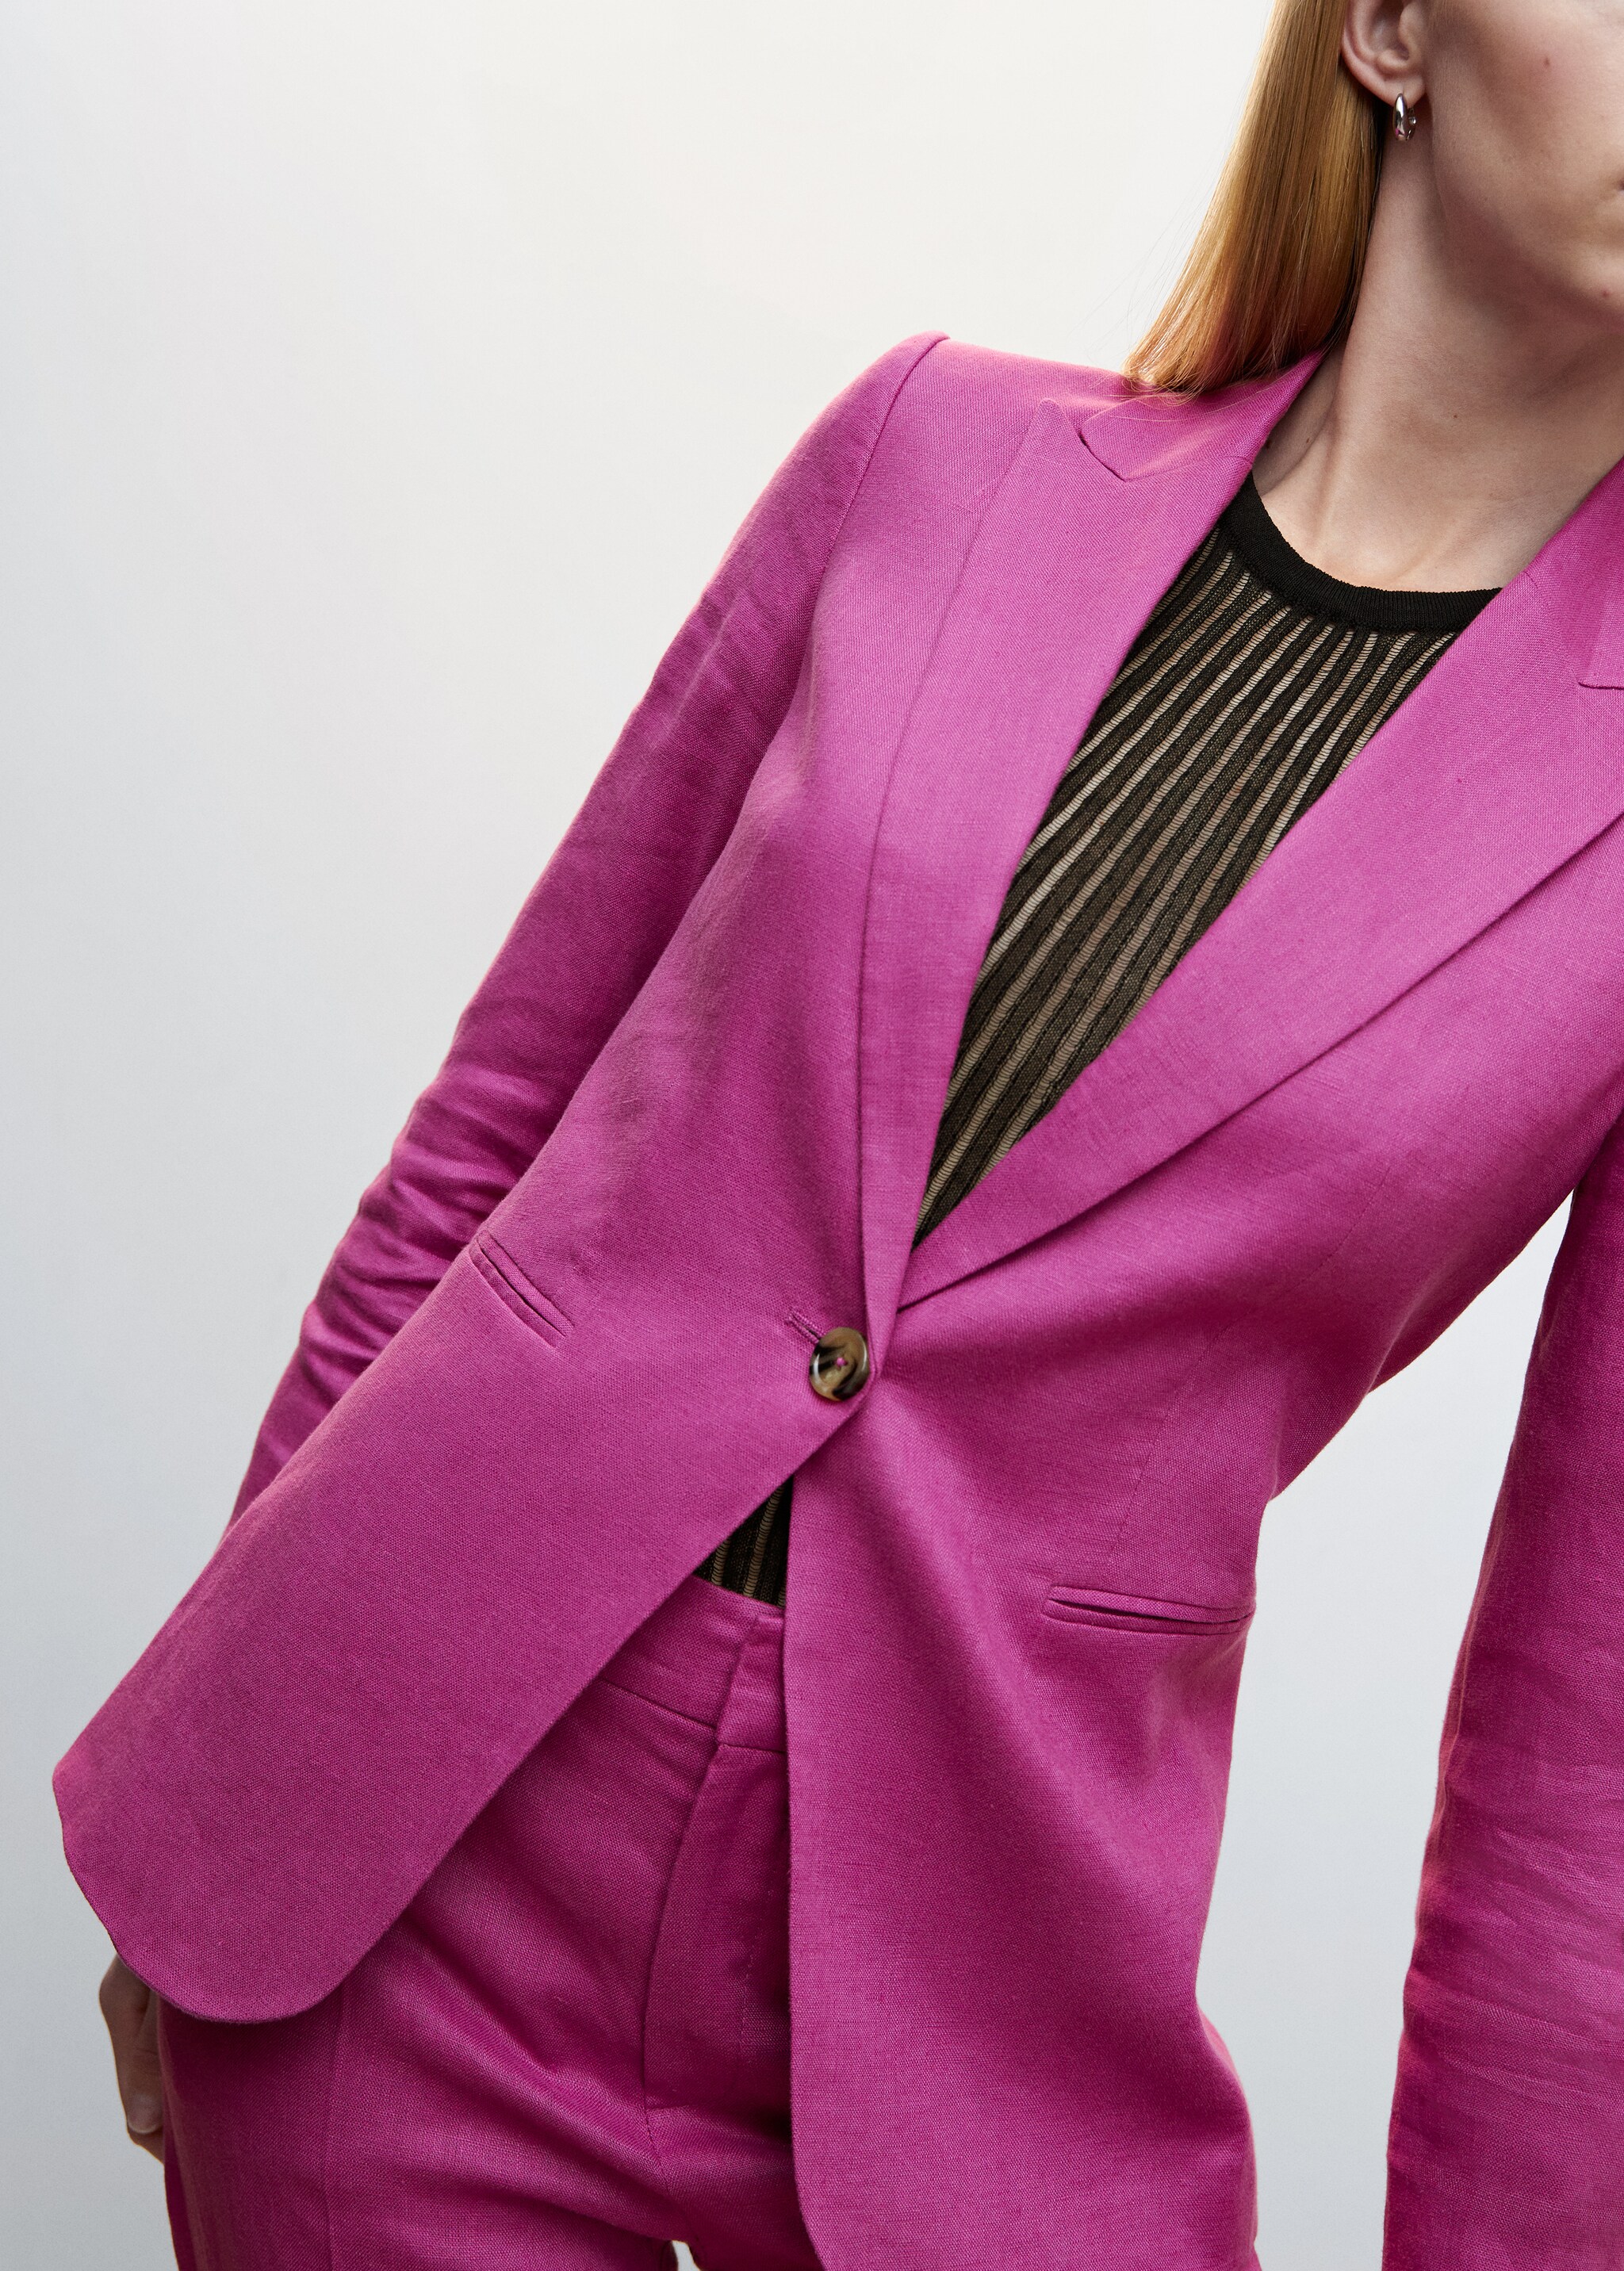 Blazer suit 100% linen - Details of the article 6